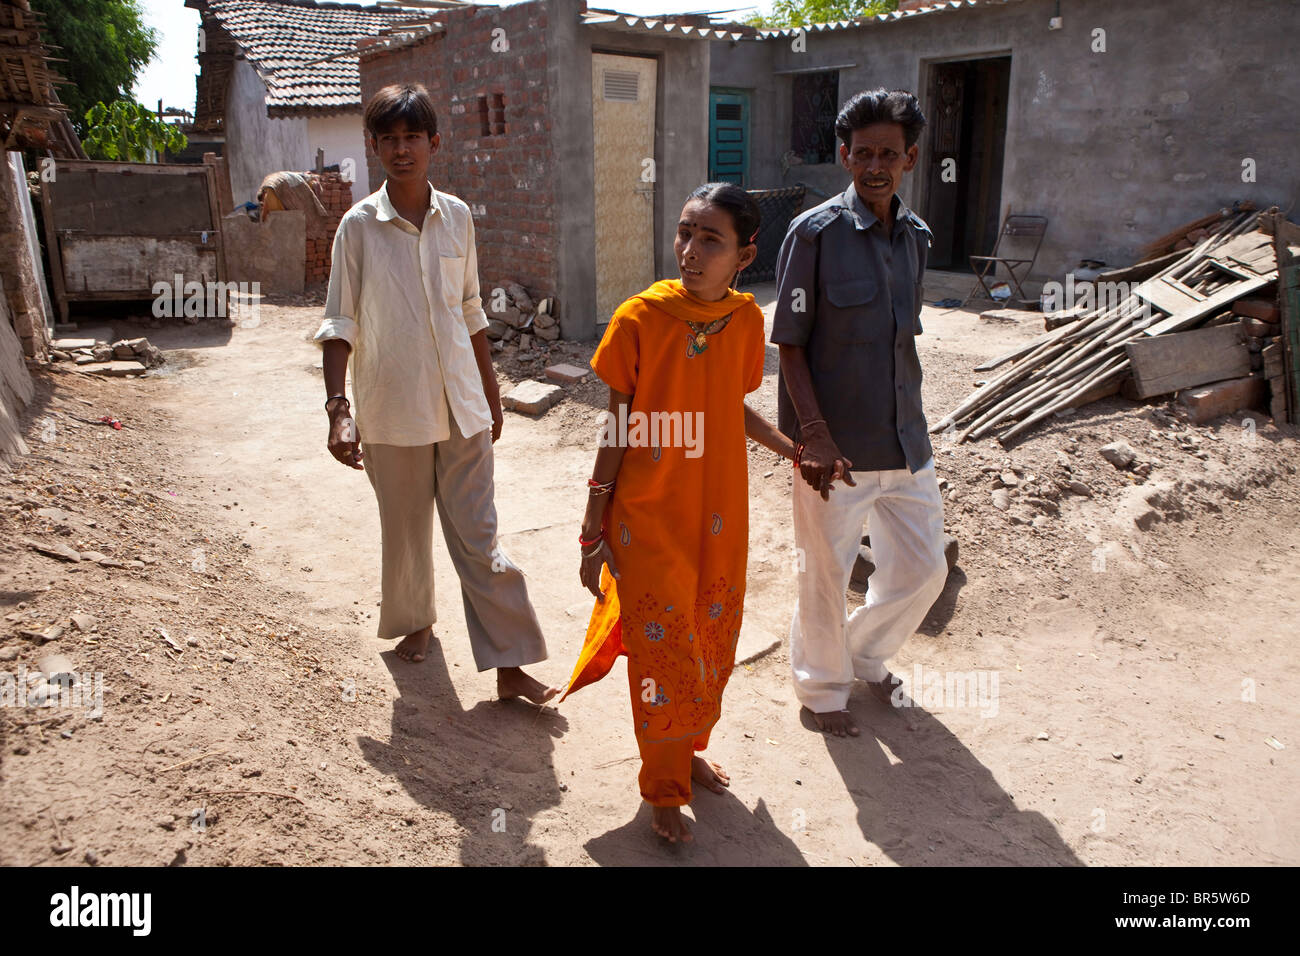 Hansa qui est sourde et aveugle de promenades à travers son village, accompagnée par son père et son frère. Banque D'Images